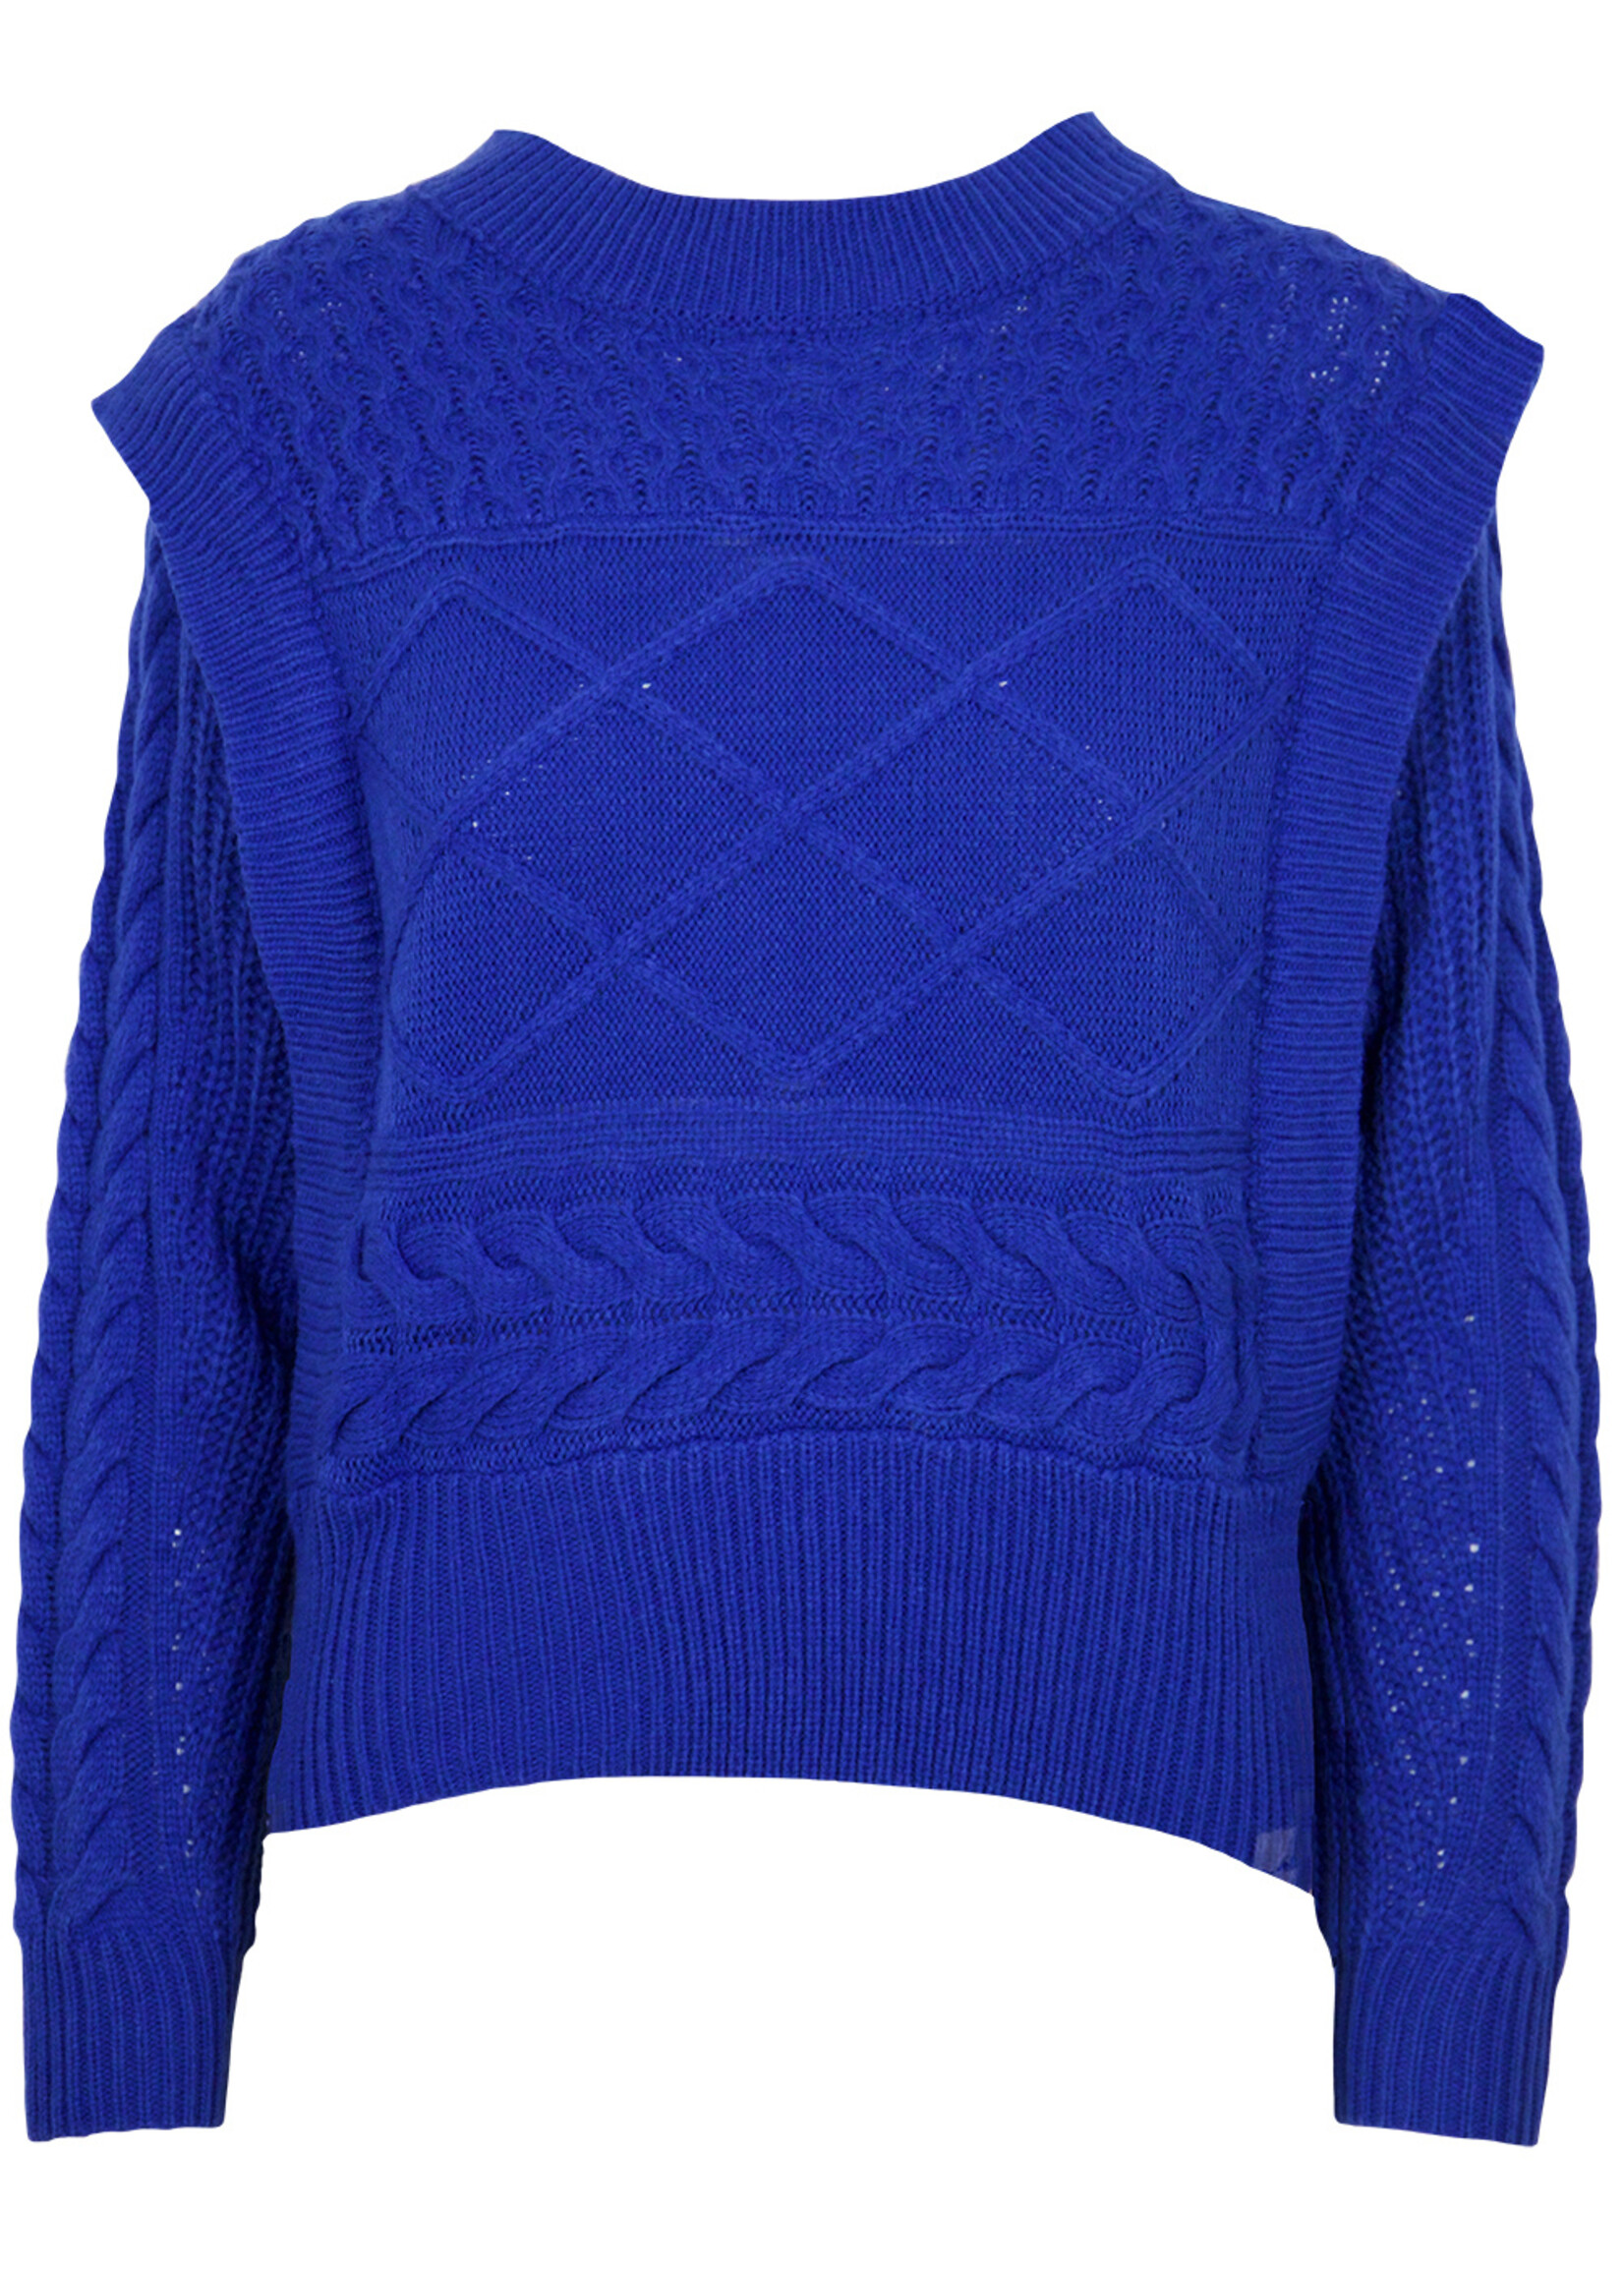 Edwina Cable Knit Sweater Blue